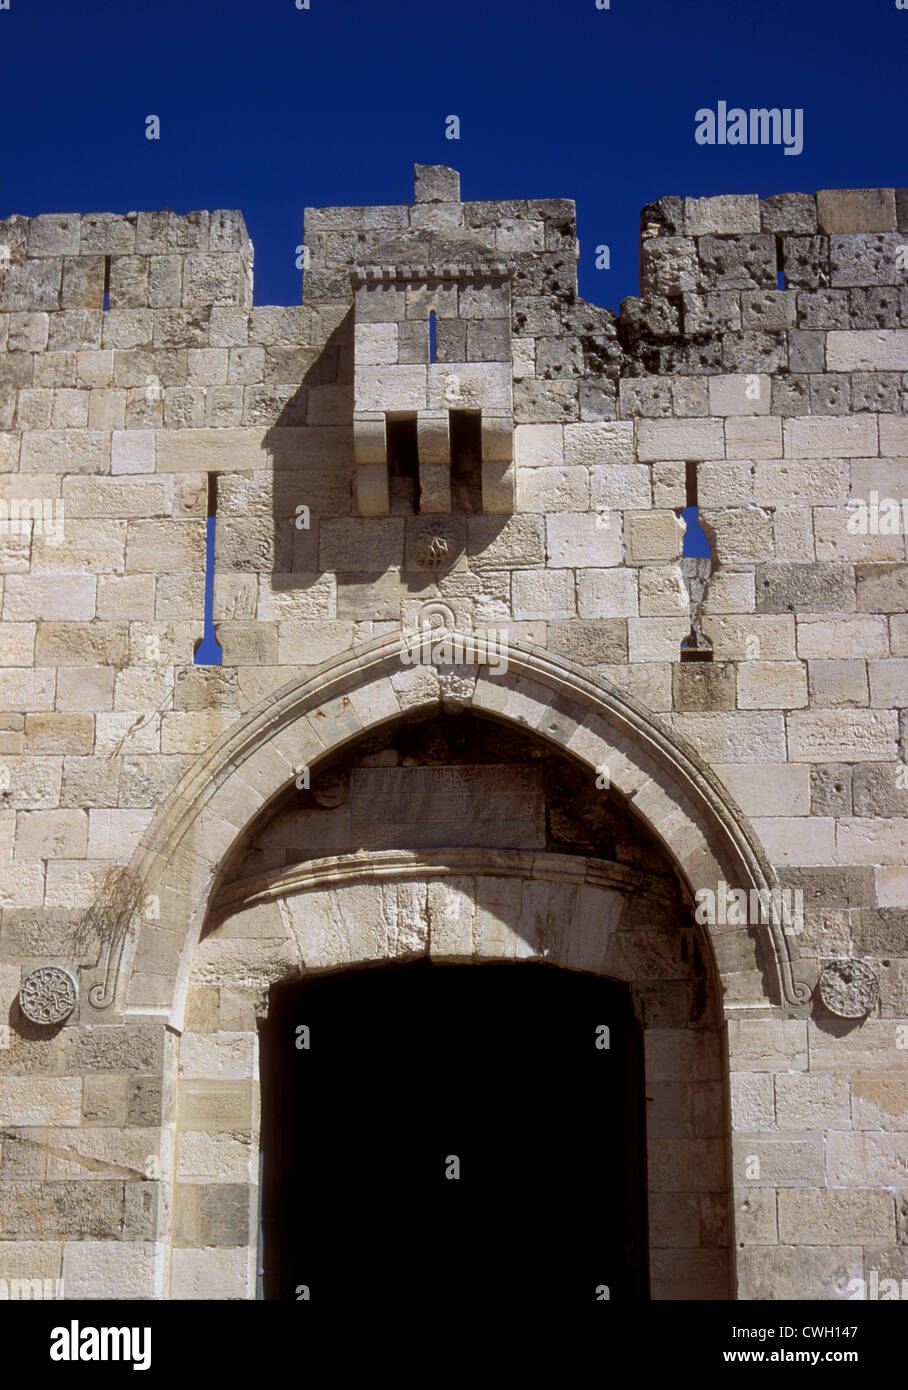 La porte de Jaffa, les murs du 16e siècle Ottoman, Jérusalem Banque D'Images